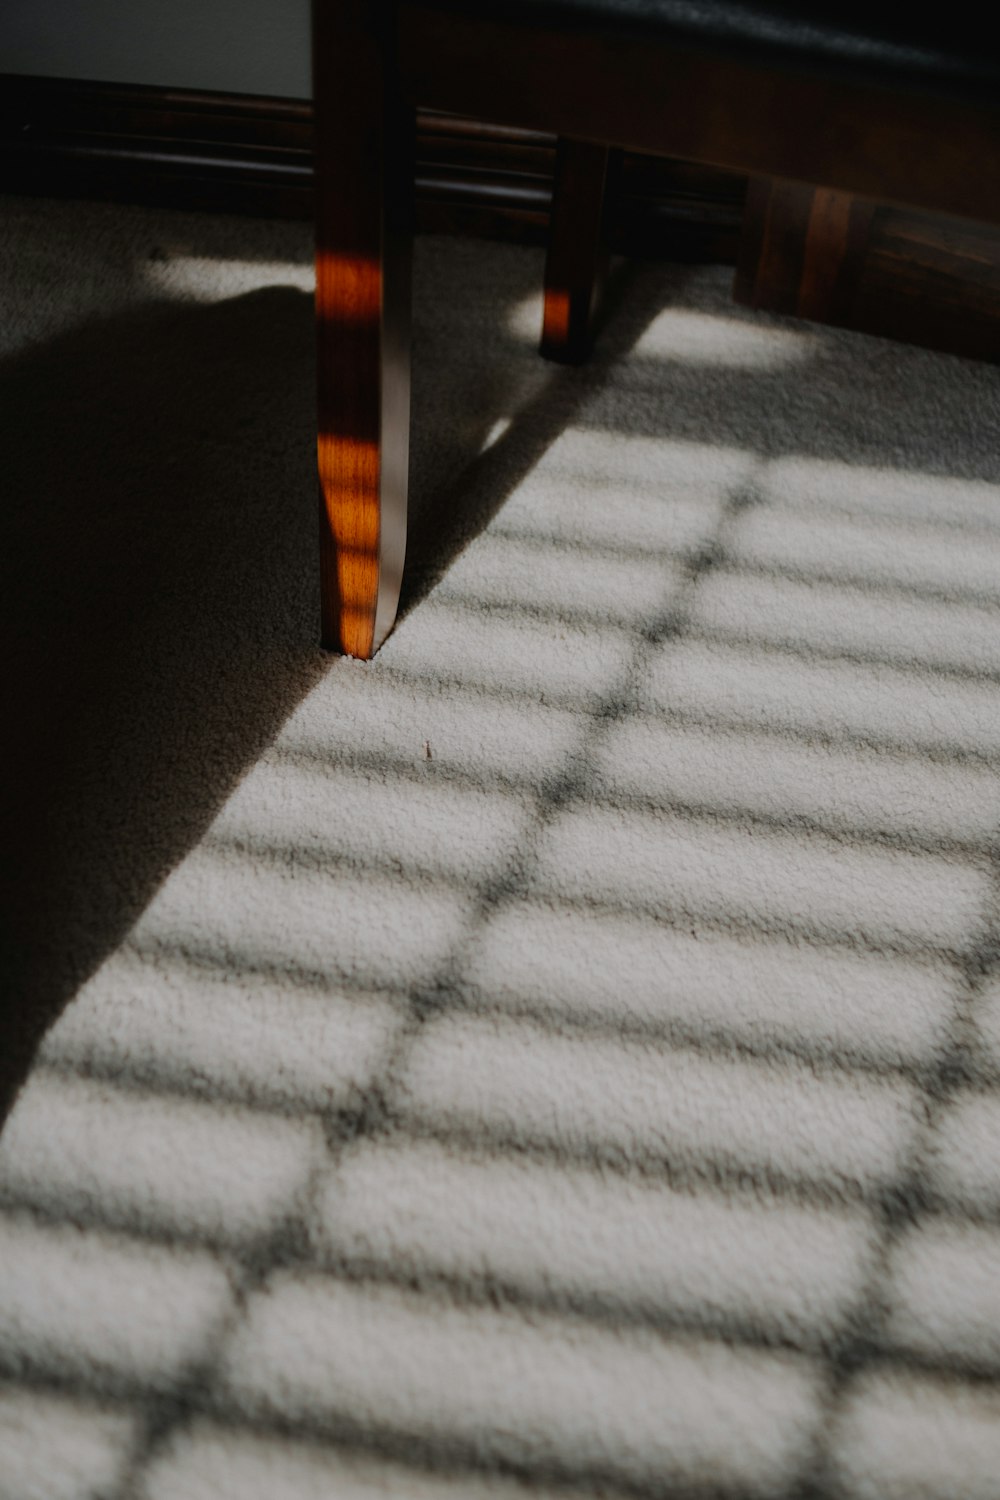 a sombra de um banco em um tapete